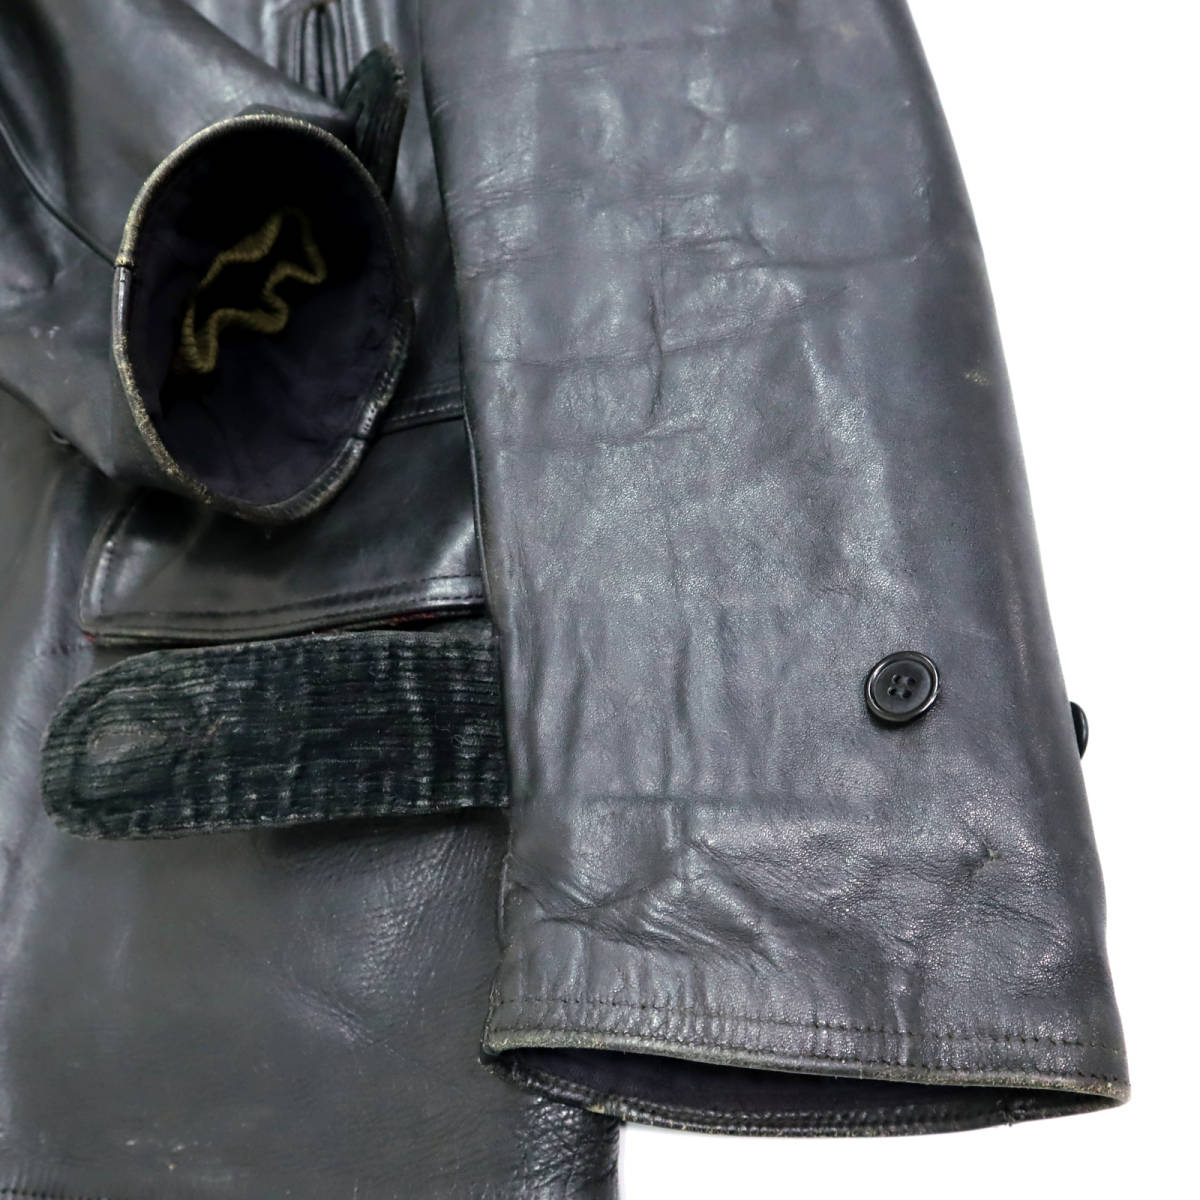  бесплатная доставка 40s Vintage Horse Hyde двойной машина пальто кожаный жакет кожаная куртка Rider's 40 годы мужской б/у одежда Work American Casual чёрный 